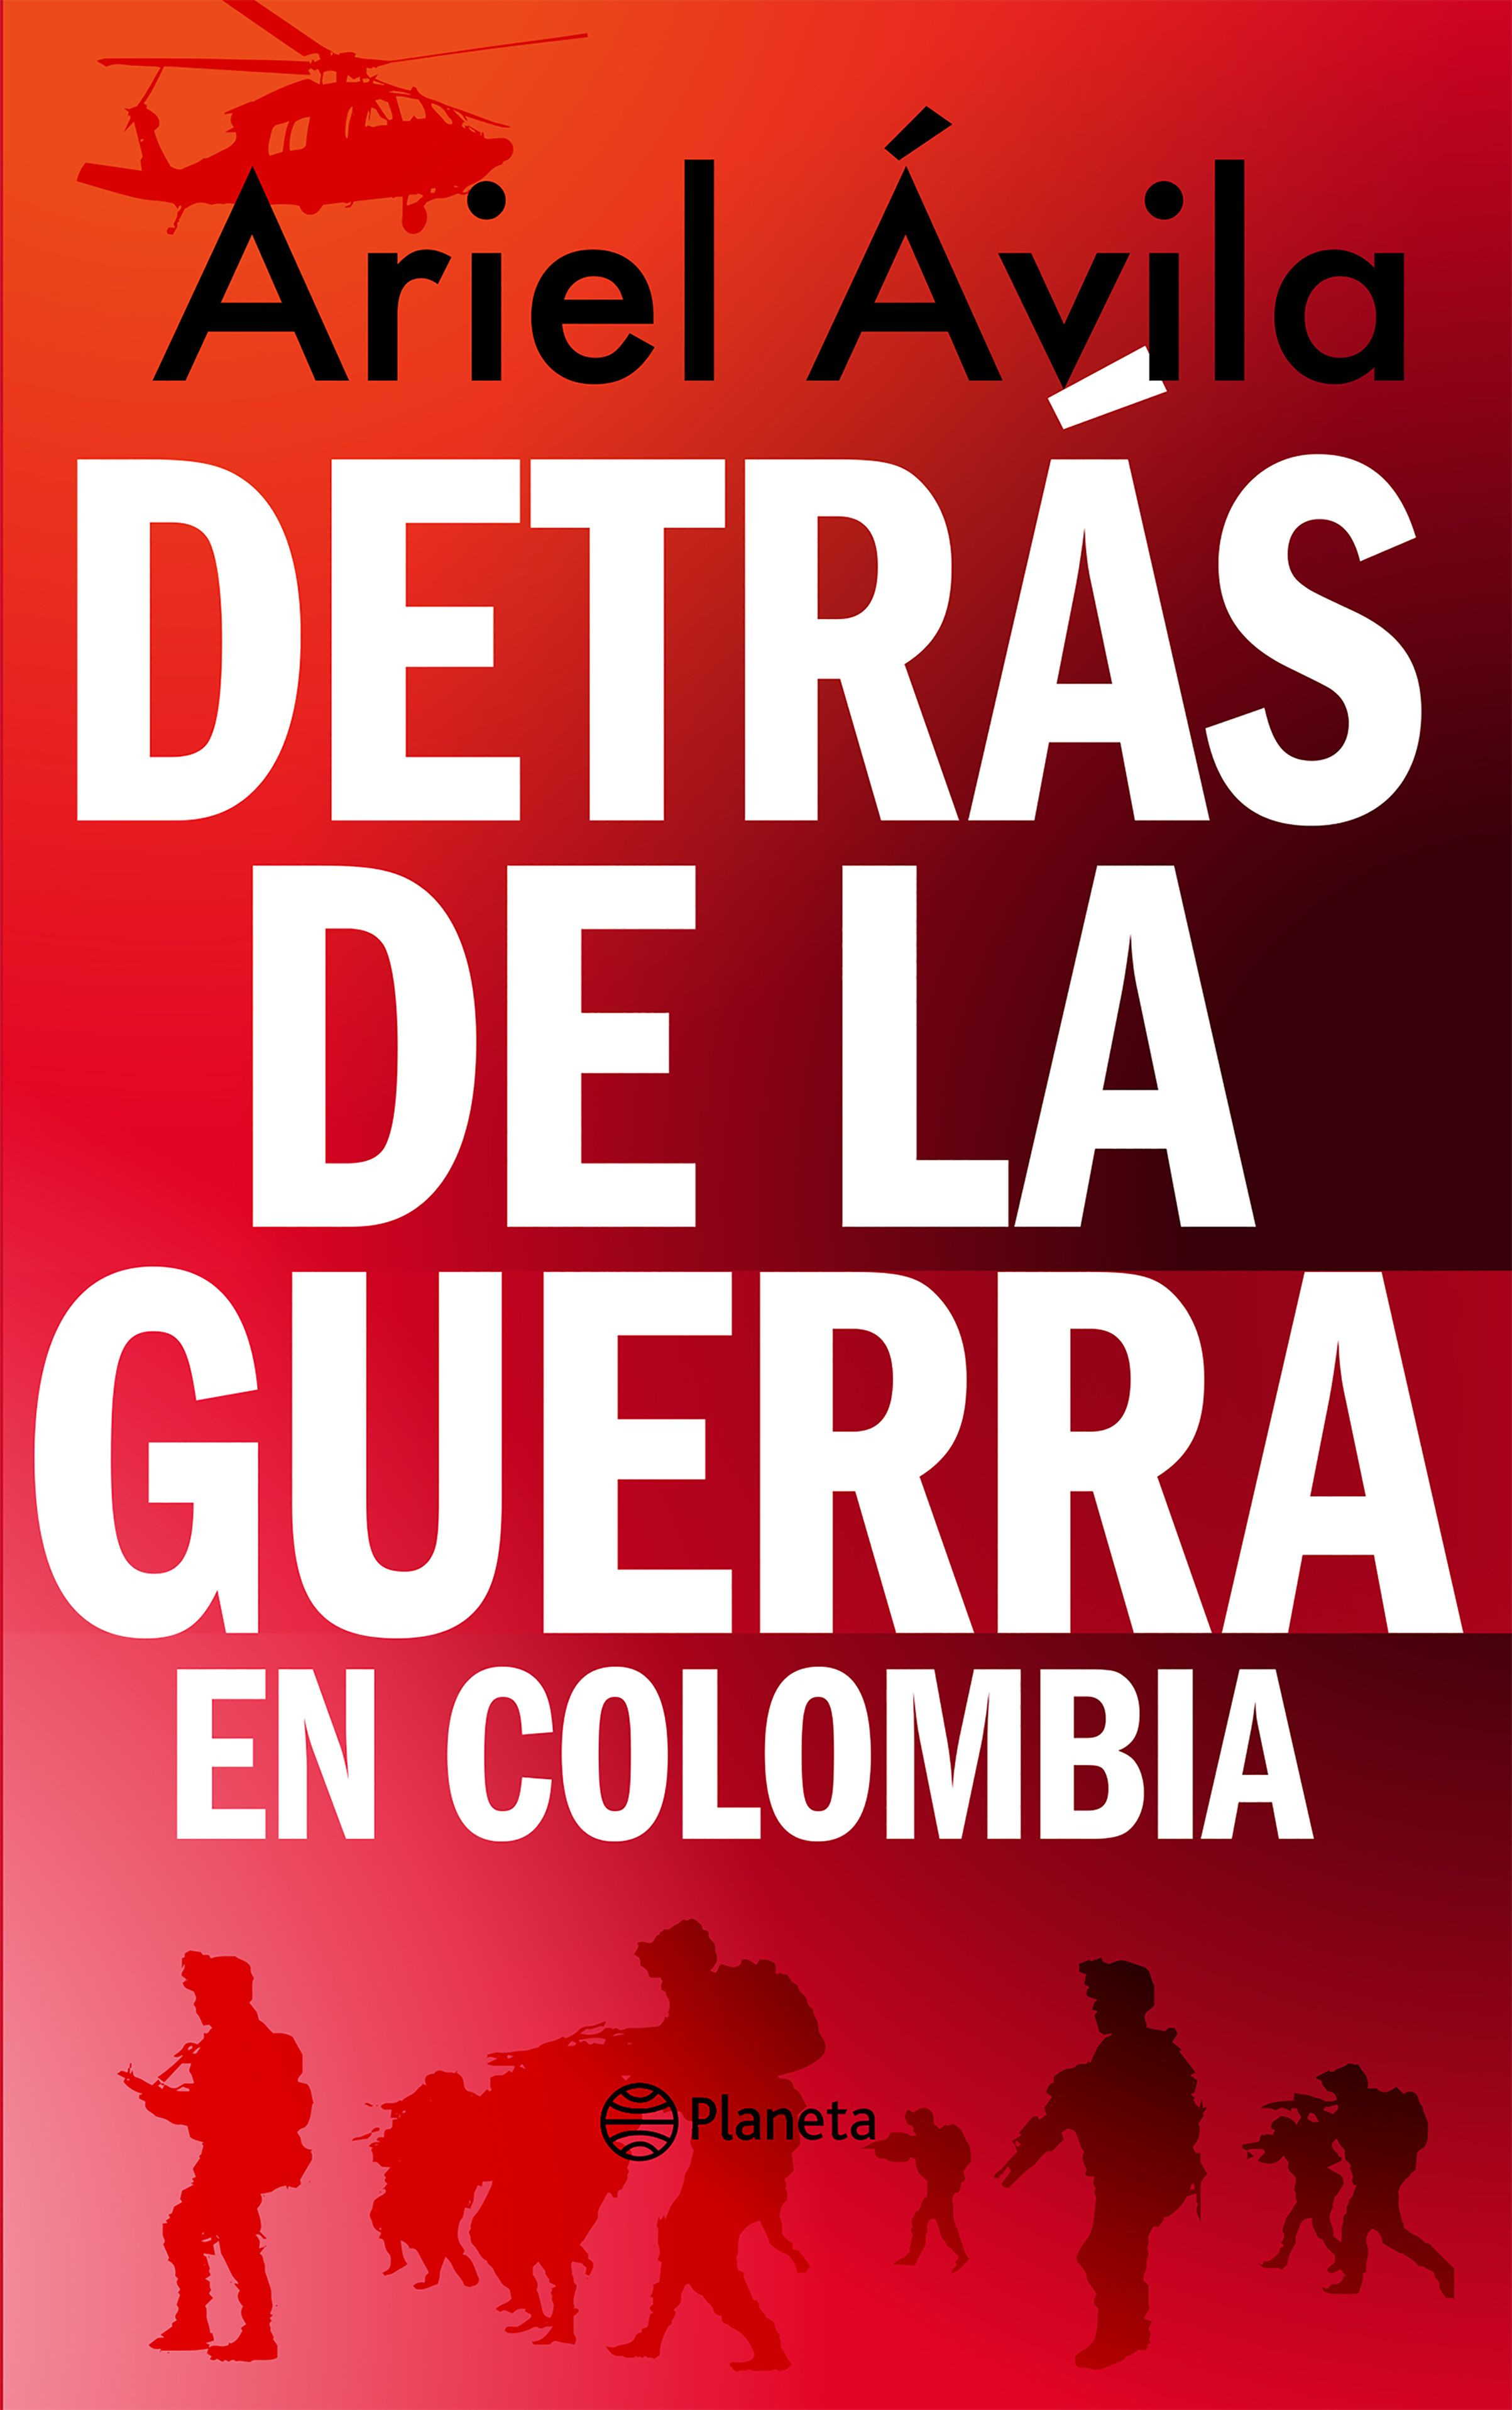 Imagen Detrás de la guerra en Colombia. Ariel Ávila Martínez 1